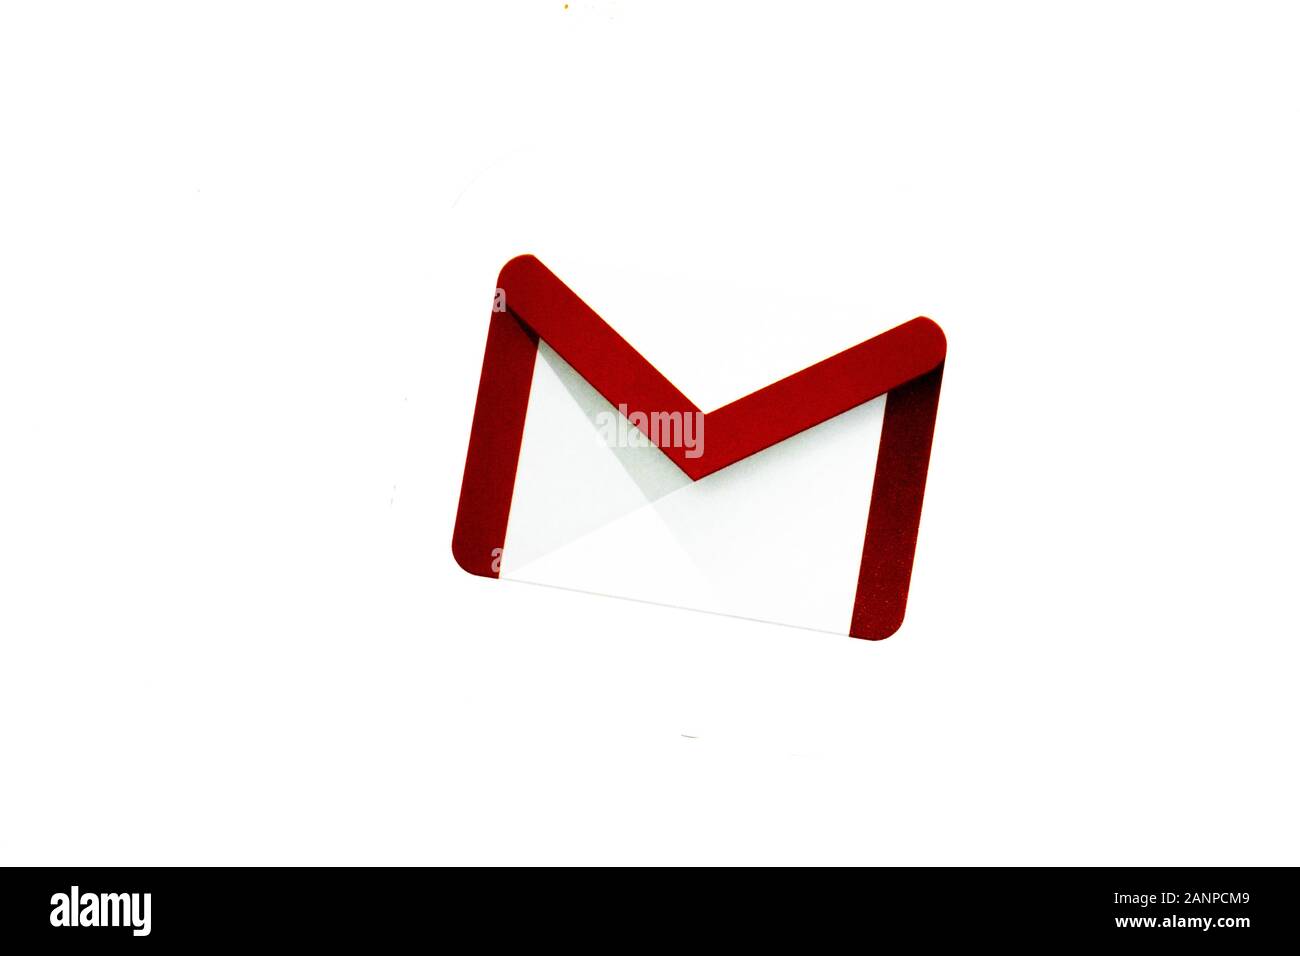 Los Angeles, Californie, États-Unis - 17 janvier 2020: Icône Google Gmail avec espace de copie, éditorial illustratif Banque D'Images